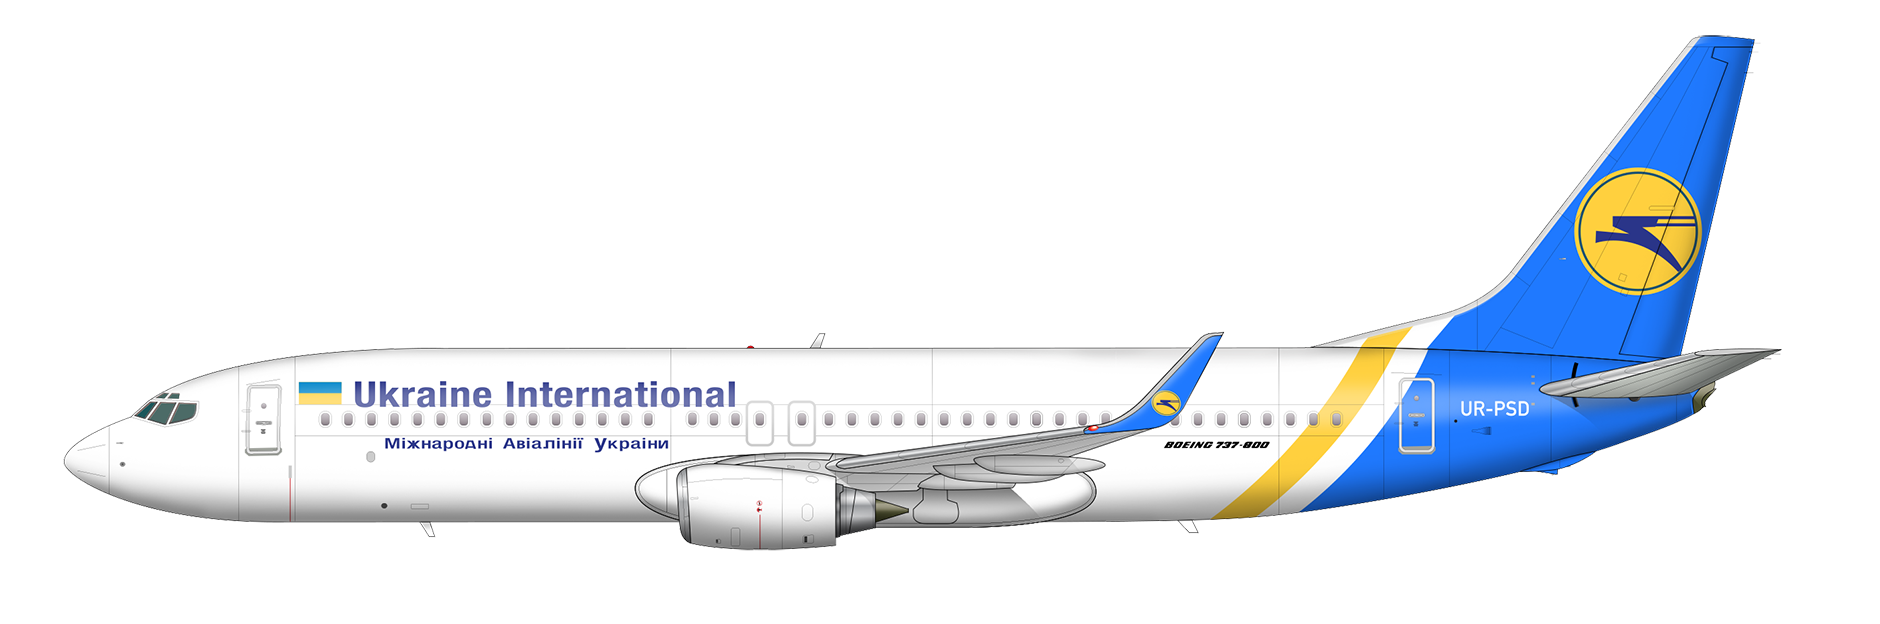 Ukraine international airlines - отзывы пассажиров 2017-2018 про авиакомпанию мау авиалинии украины - страница №7